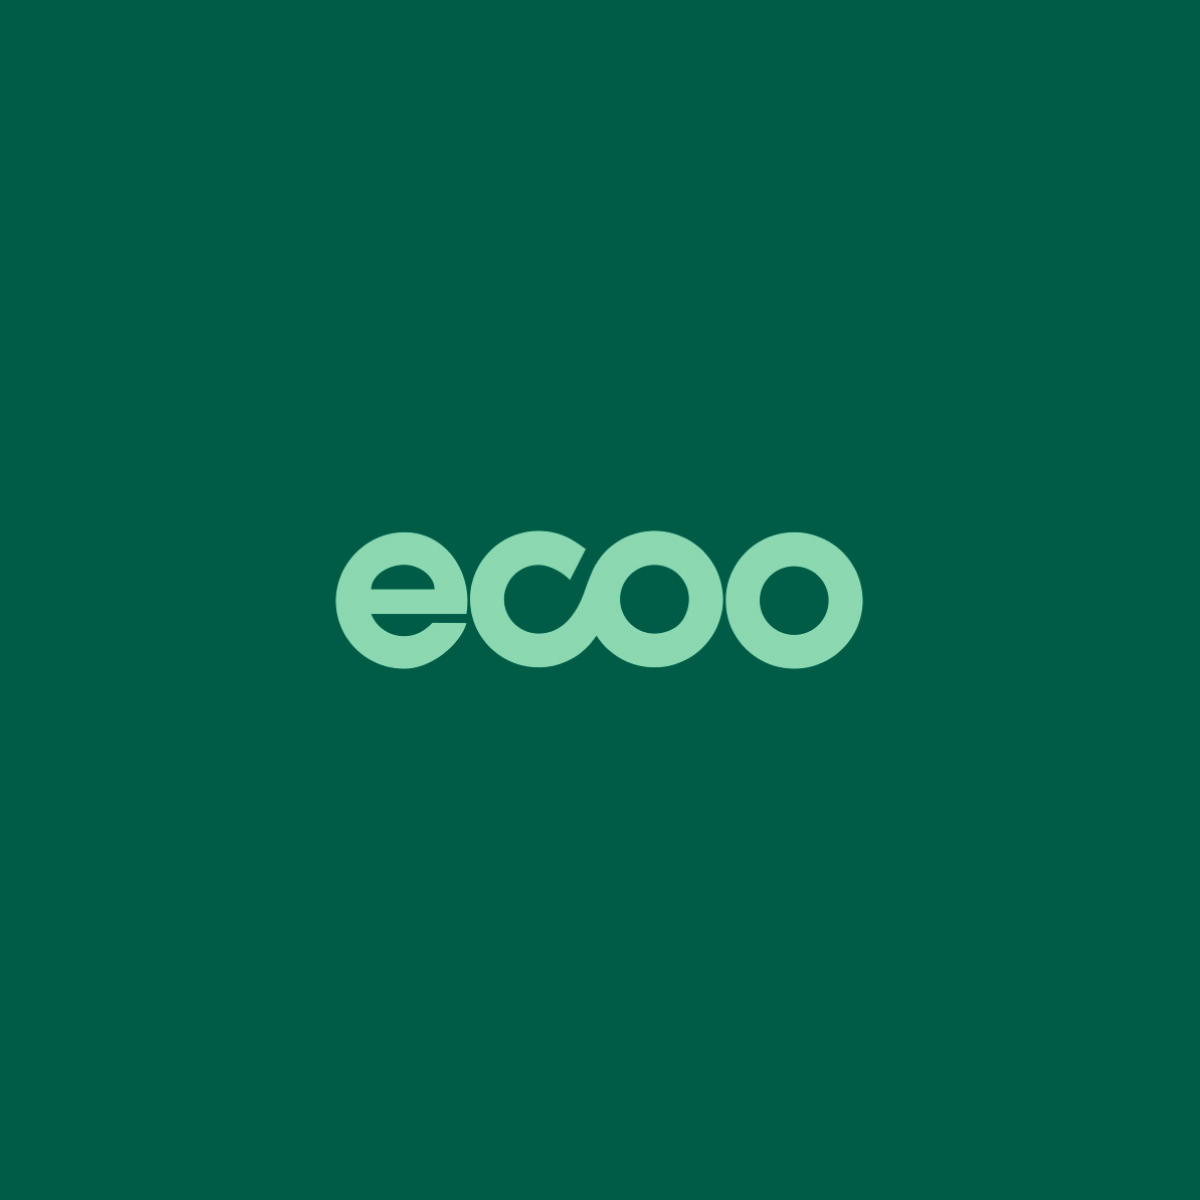 Eco-oh! becomes Ecoo